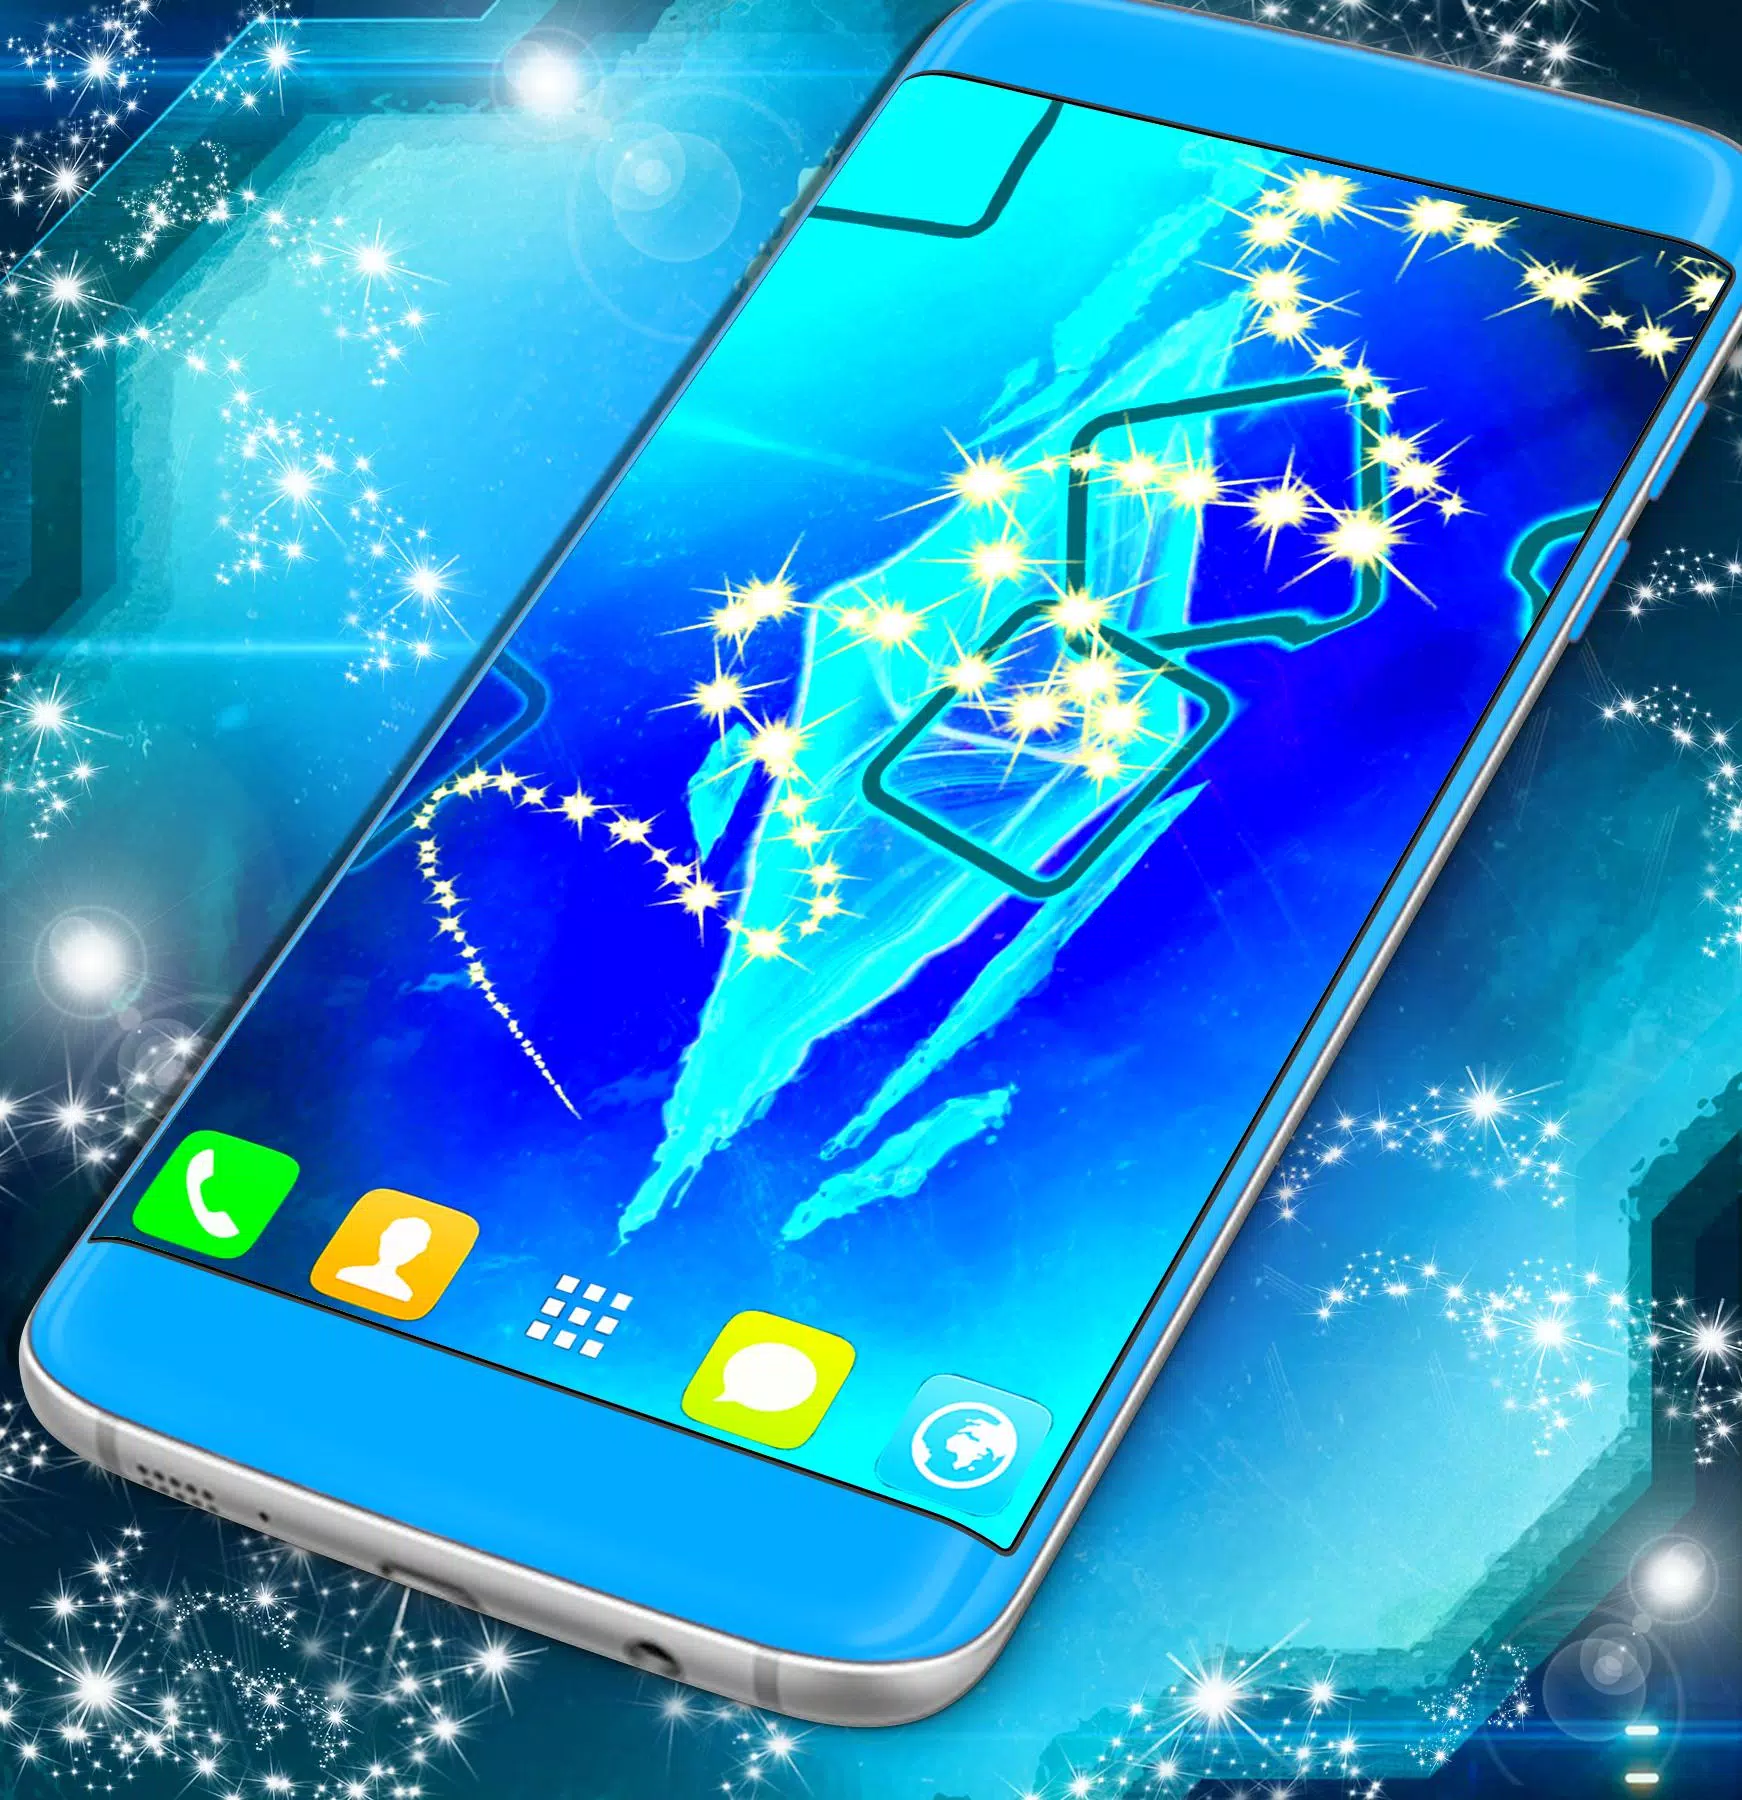 Mang đến trải nghiệm mới lạ và thú vị cho người dùng Samsung Galaxy J7 Prime với Live Wallpaper độc đáo. Chúng sẽ giúp cho hình nền của bạn trở nên sinh động, thú vị và vô cùng bắt mắt. Để chiêm ngưỡng sức hút của Live Wallpaper, bạn hãy xem ngay hình ảnh liên quan.